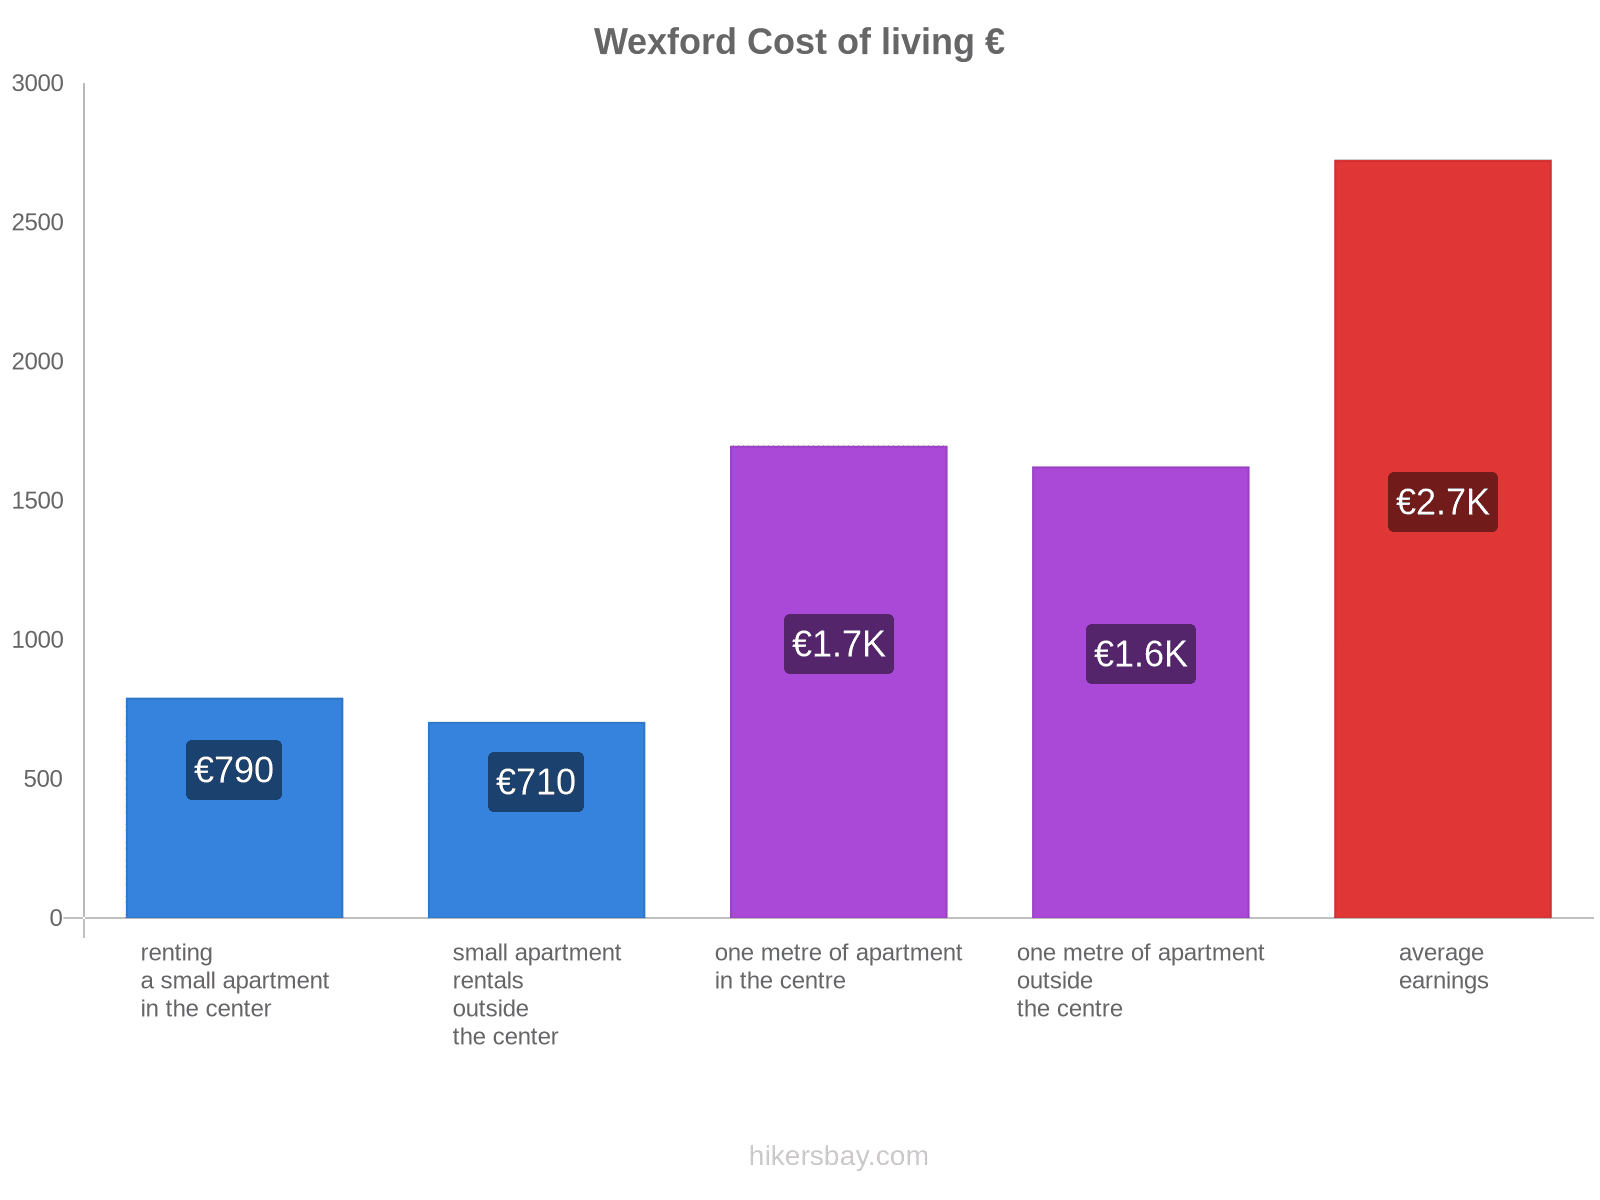 Wexford cost of living hikersbay.com